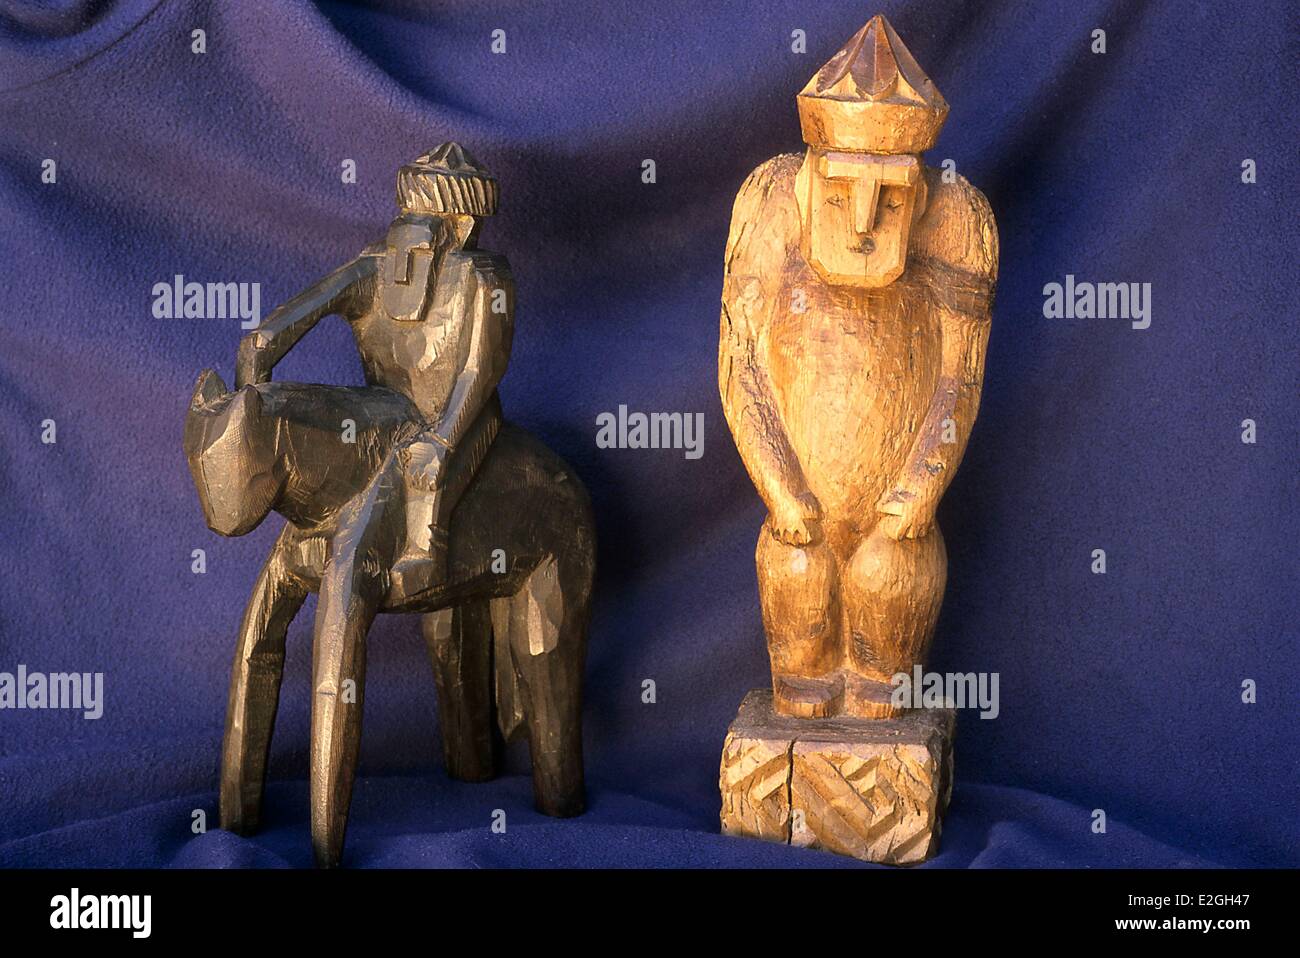 Vallées Kalash Khyber Pakhtunkhwa au Pakistan vallée deux Gundurik Bumburet petite statue funéraire en bois représentant une Kalache guerrier de haut rang et d'un grand homme Banque D'Images